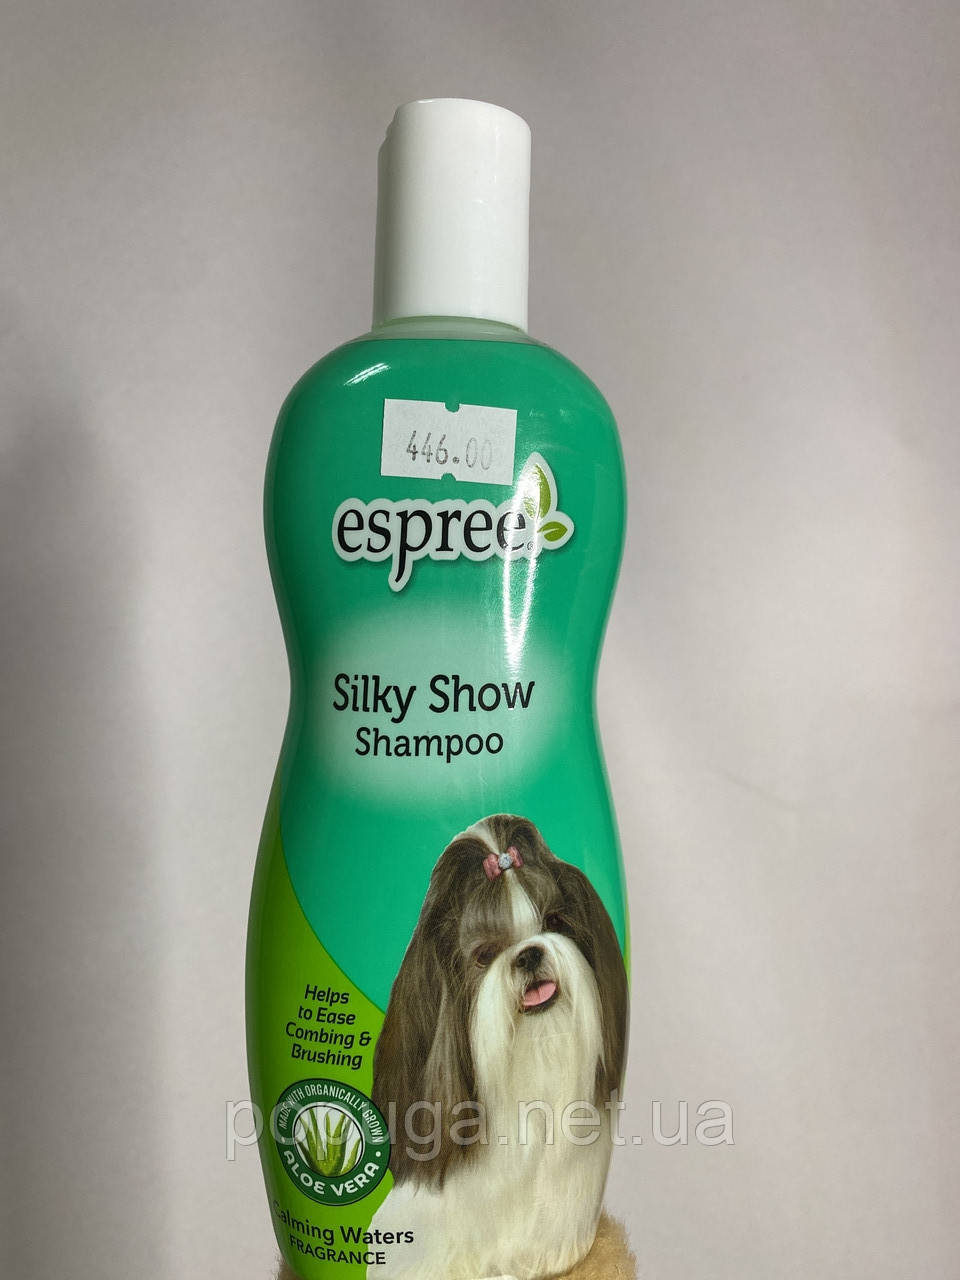 Espree Silky Show Shampoo шампунь для собак, 355 мл